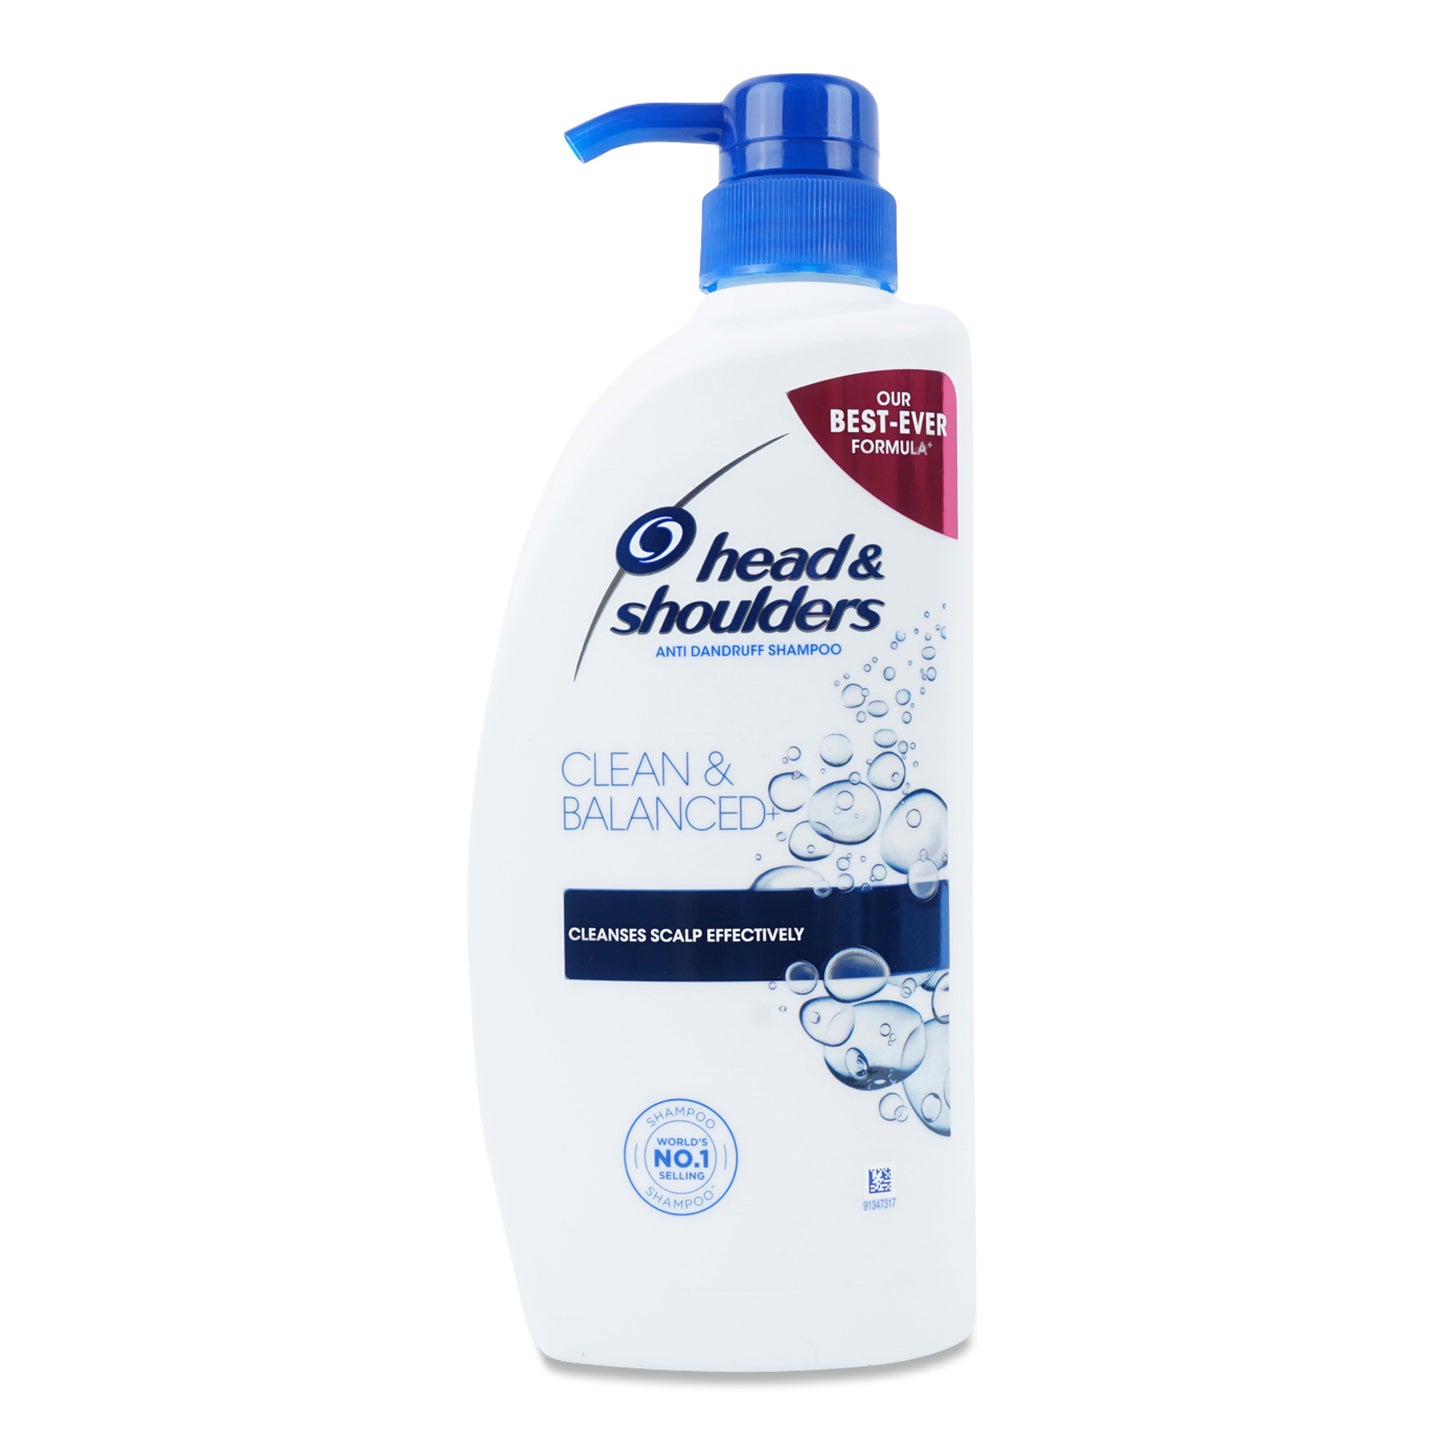 Head & Shoulders Shampoo Clean & Balanced 720Ml (Pump)